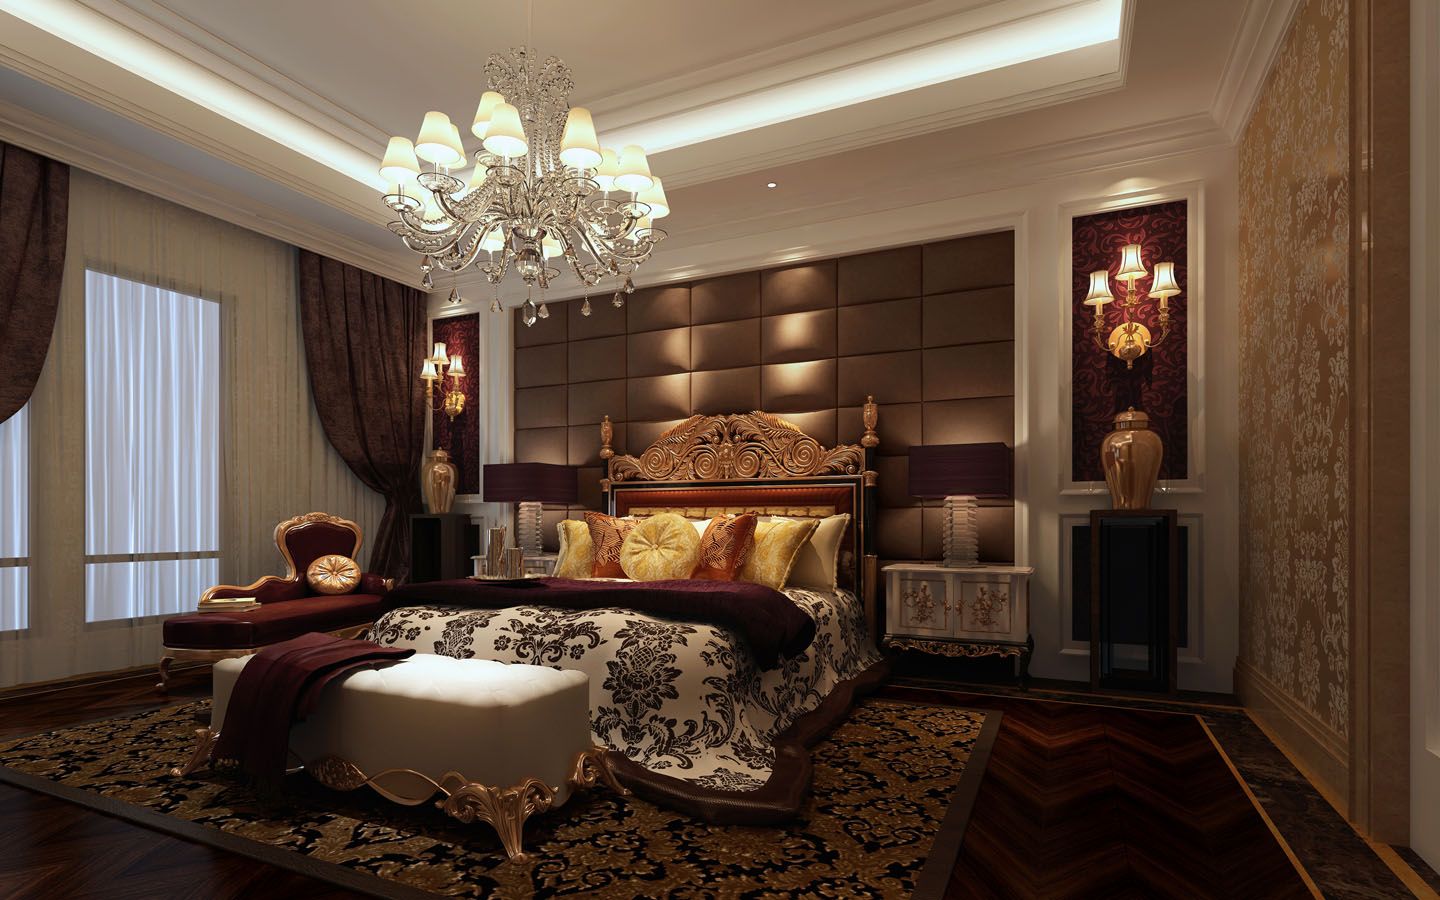 海户西里 卧室 卧室图片来自北京合建装饰单聪聪在海户西里欧式新古典风格的分享